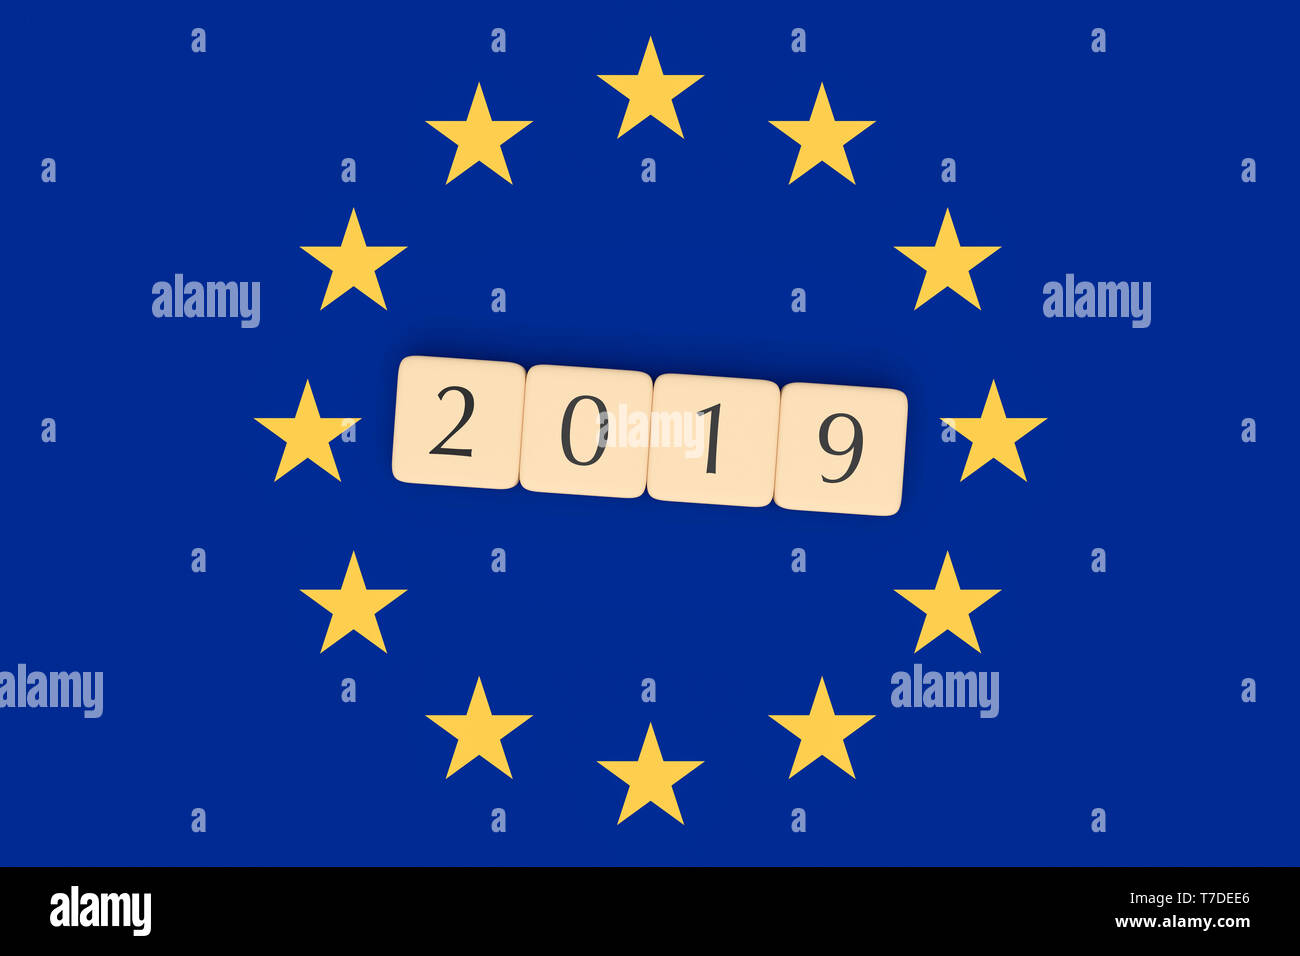 European Union Politics News Concept: Letter Tiles 2019 With EU Flag, 3d illustration Stock Photo